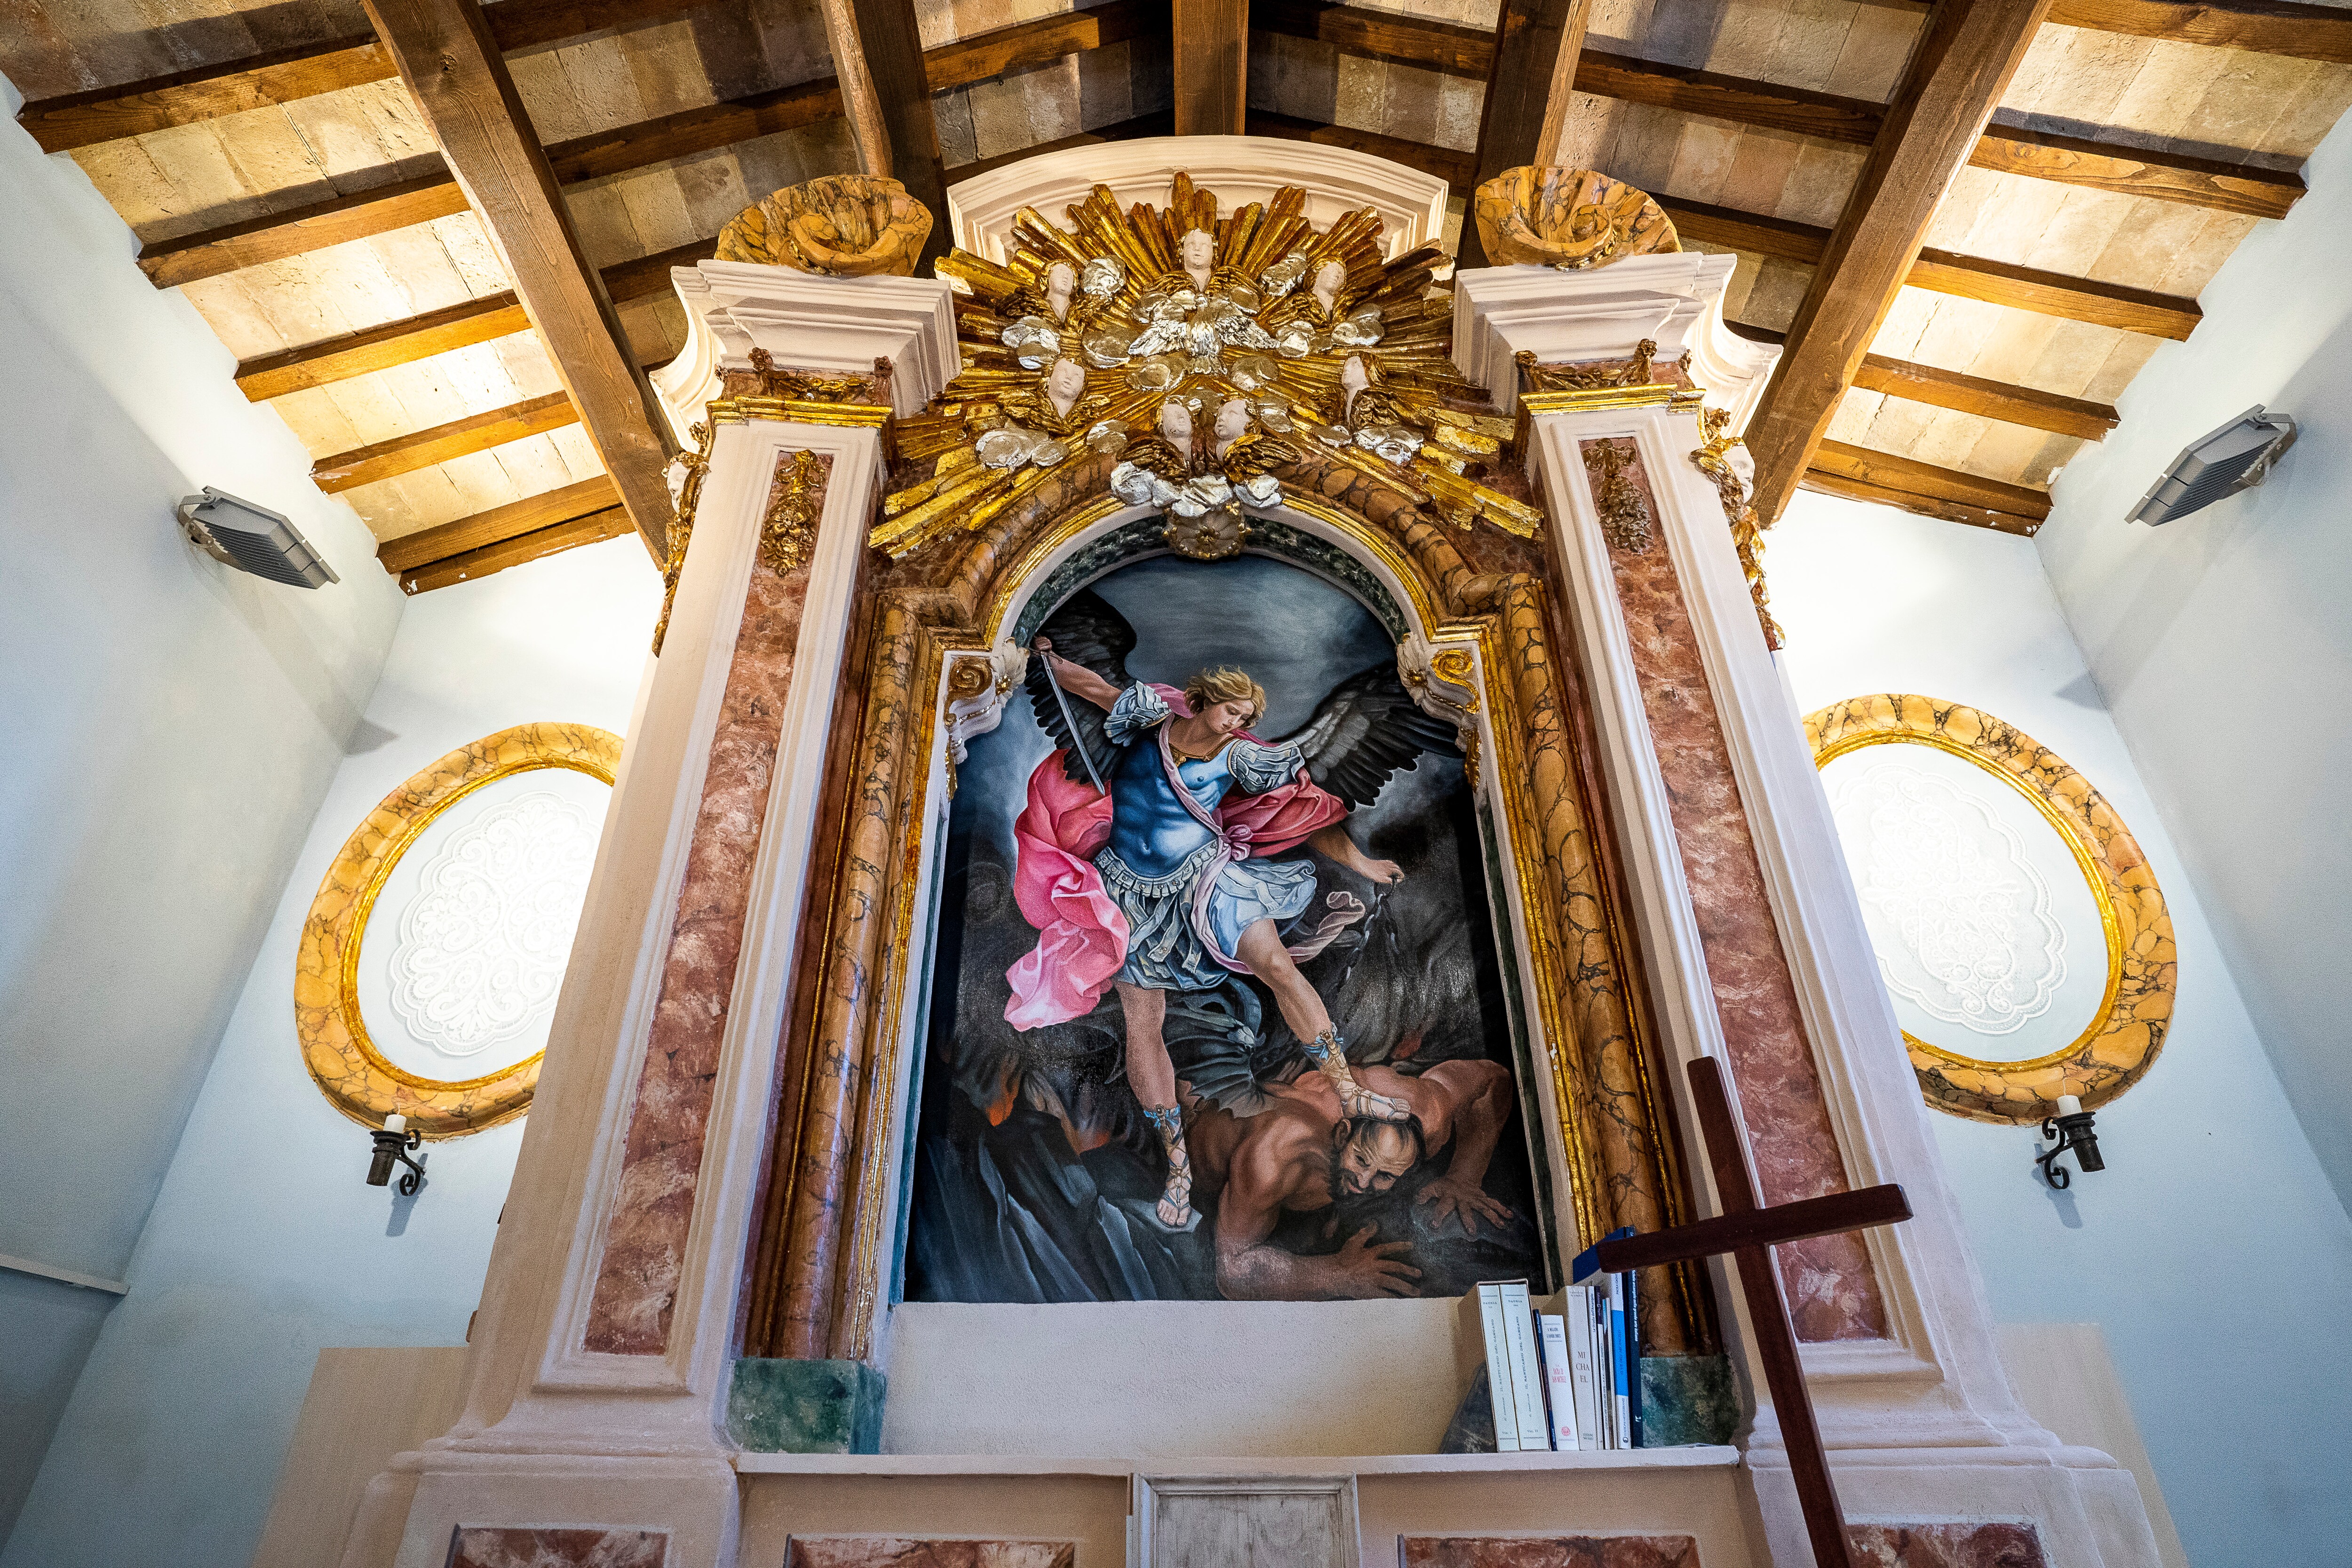 Chiesa di San Michele, Offida - Ascoli Piceno. Foto Katia Camplone 2021, FAI - Fondo Ambiente Italiano.